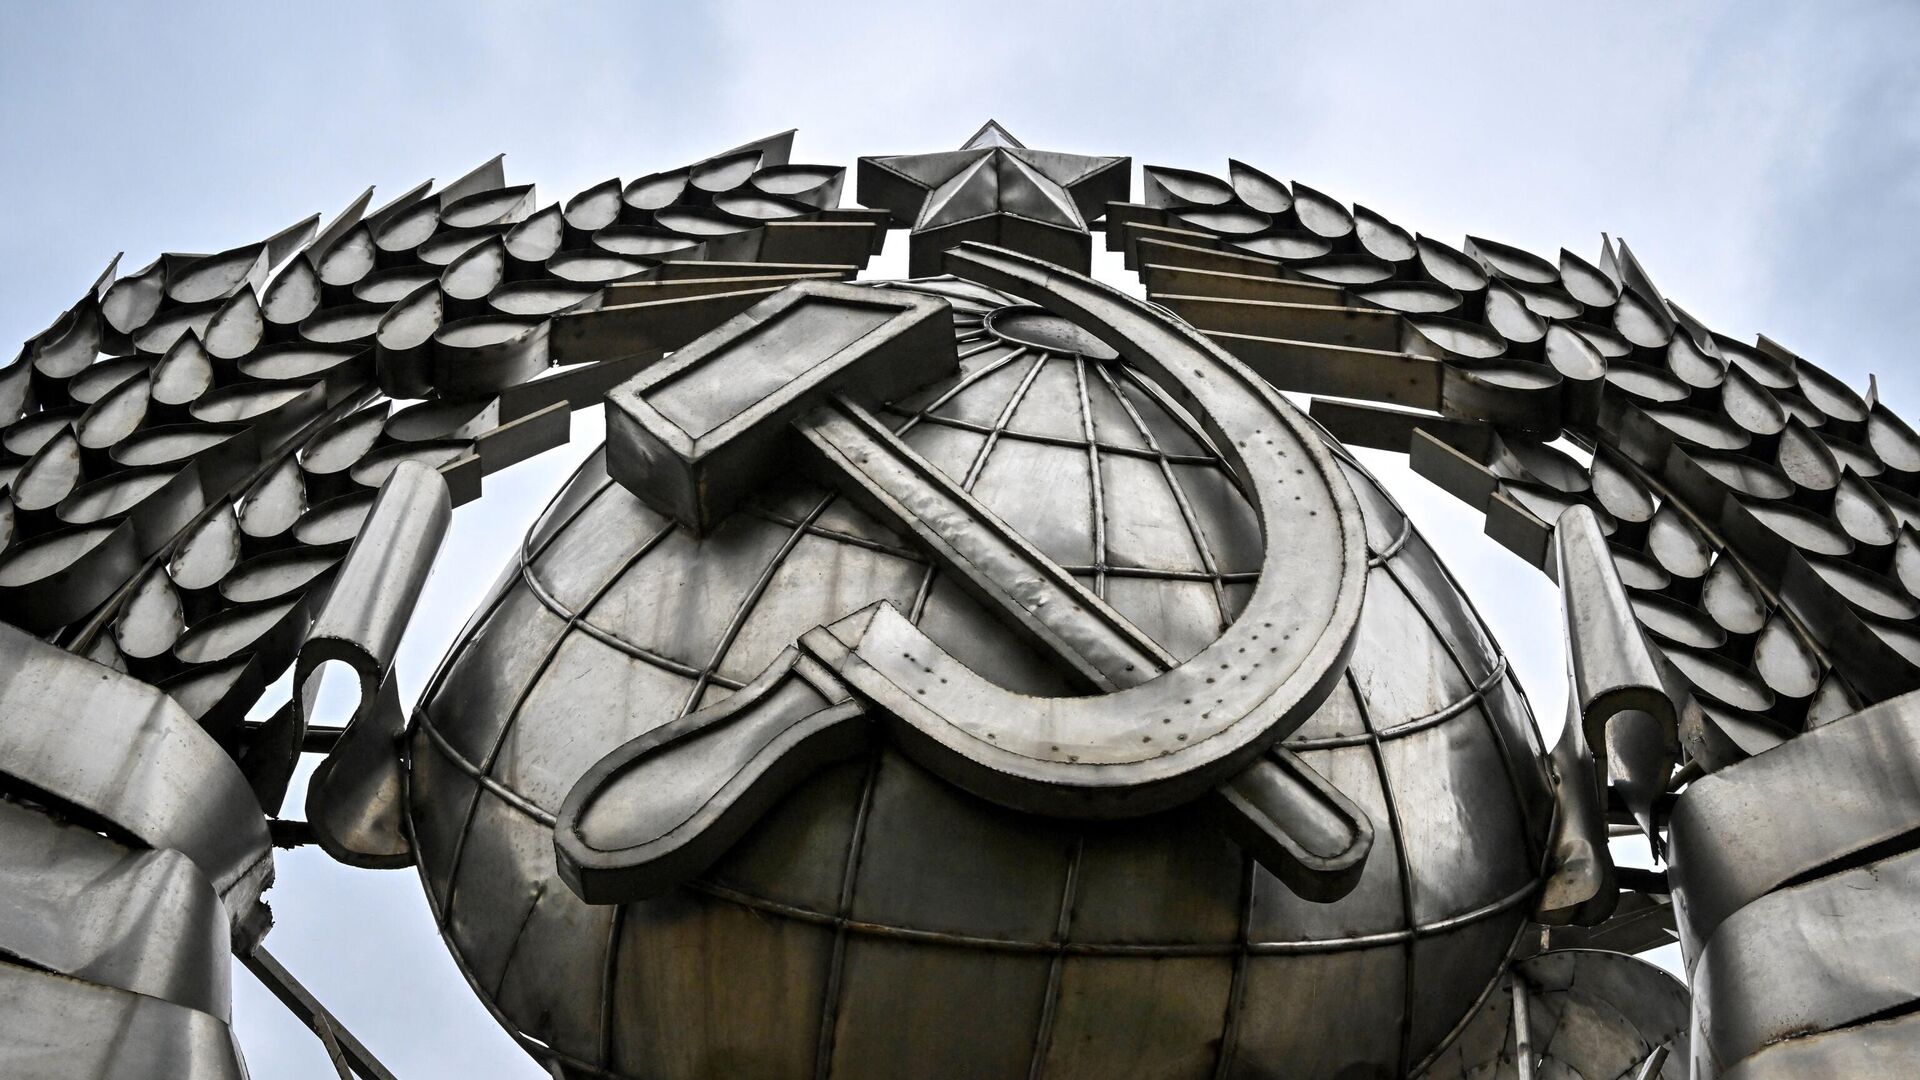 Un emblema de la Unión Soviética que fue removido tras su desintegración y hoy figura en un parque de memoria en Moscú. - Sputnik Mundo, 1920, 30.12.2022